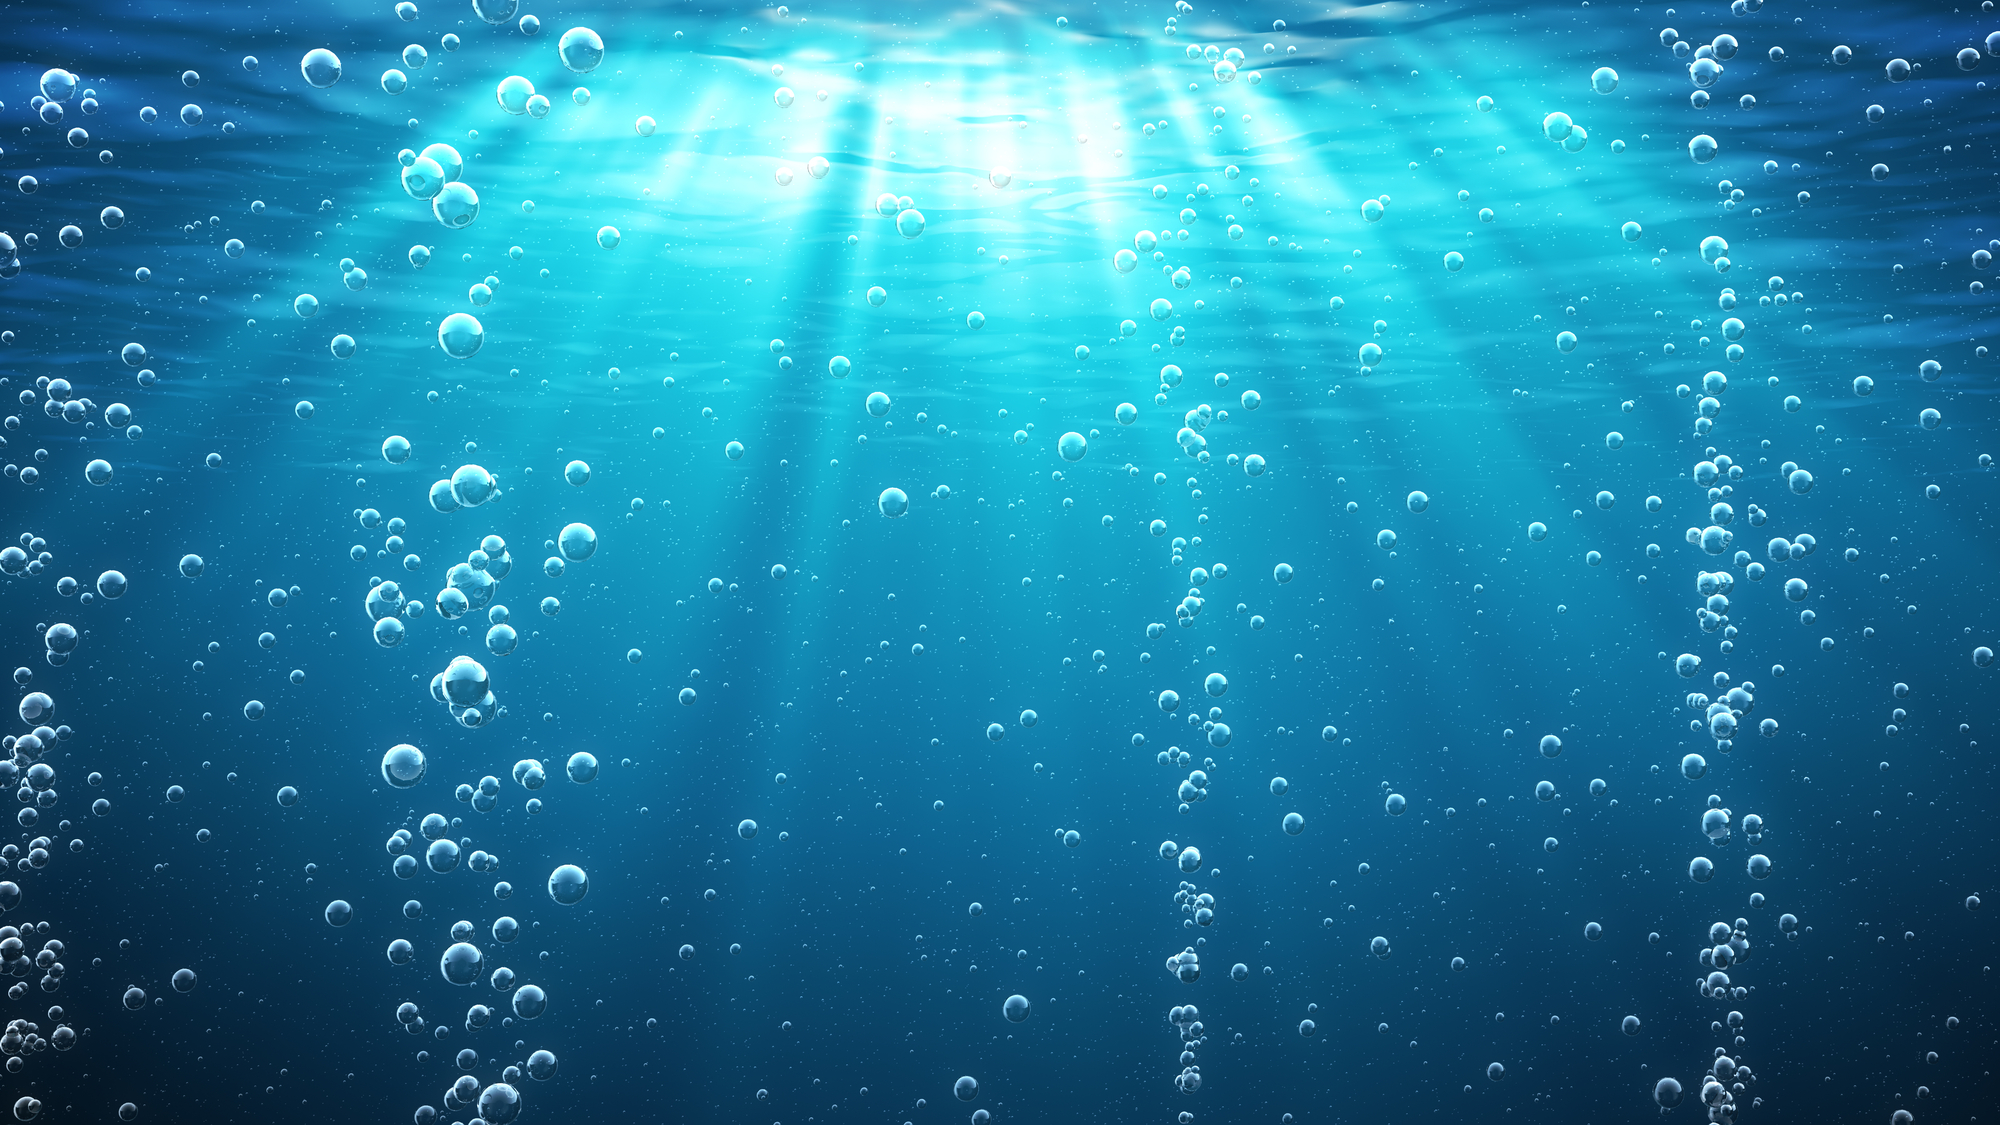 Bollicine di aria che salgono verso la superficie del mare, vista da sott'acqua